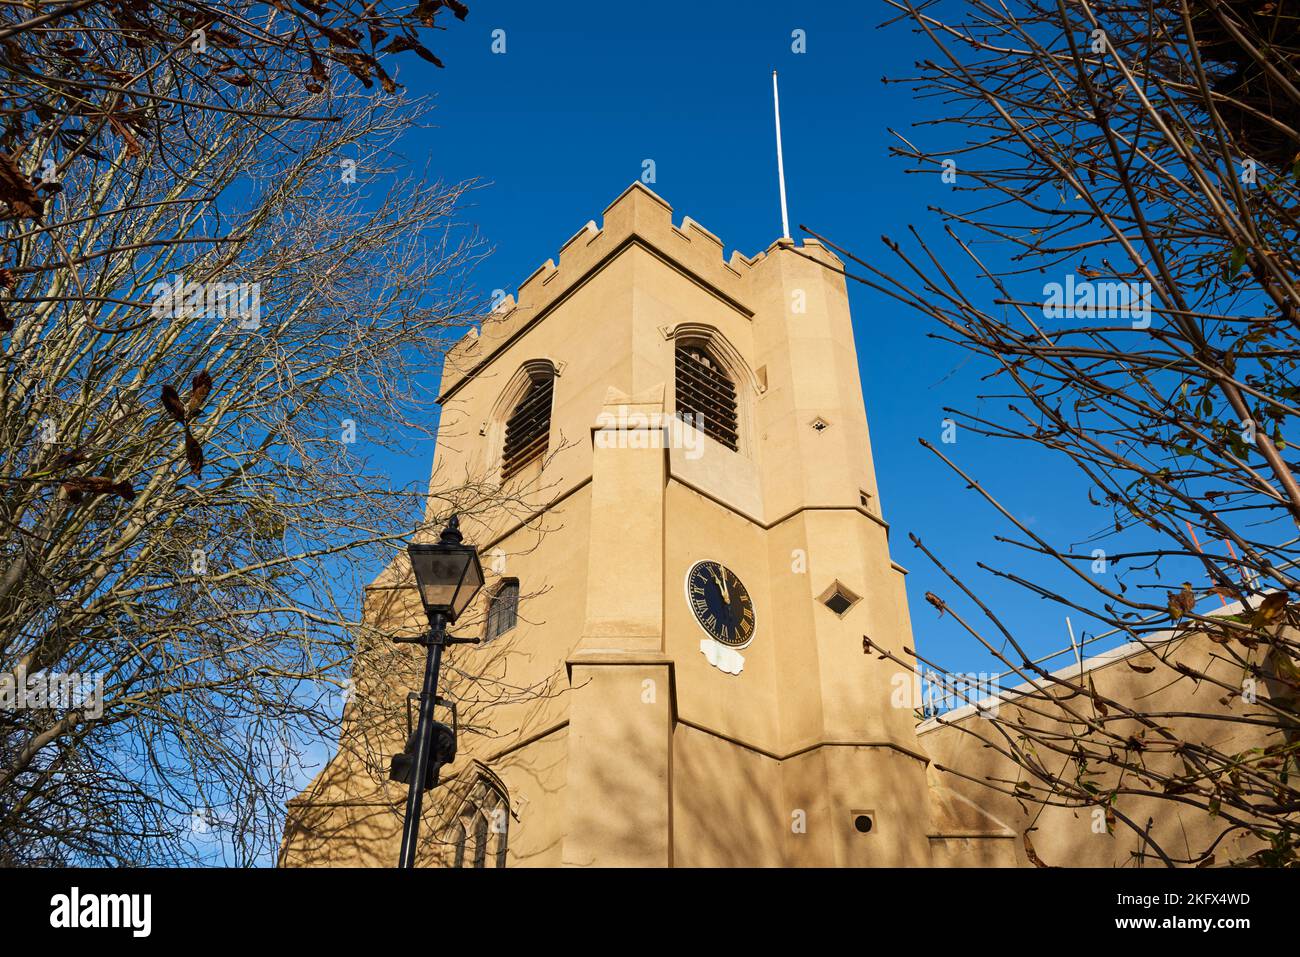 La tour restaurée de 15th siècles de l'église St Mary dans le village de Walthamstow, au nord-est de Londres, Royaume-Uni Banque D'Images